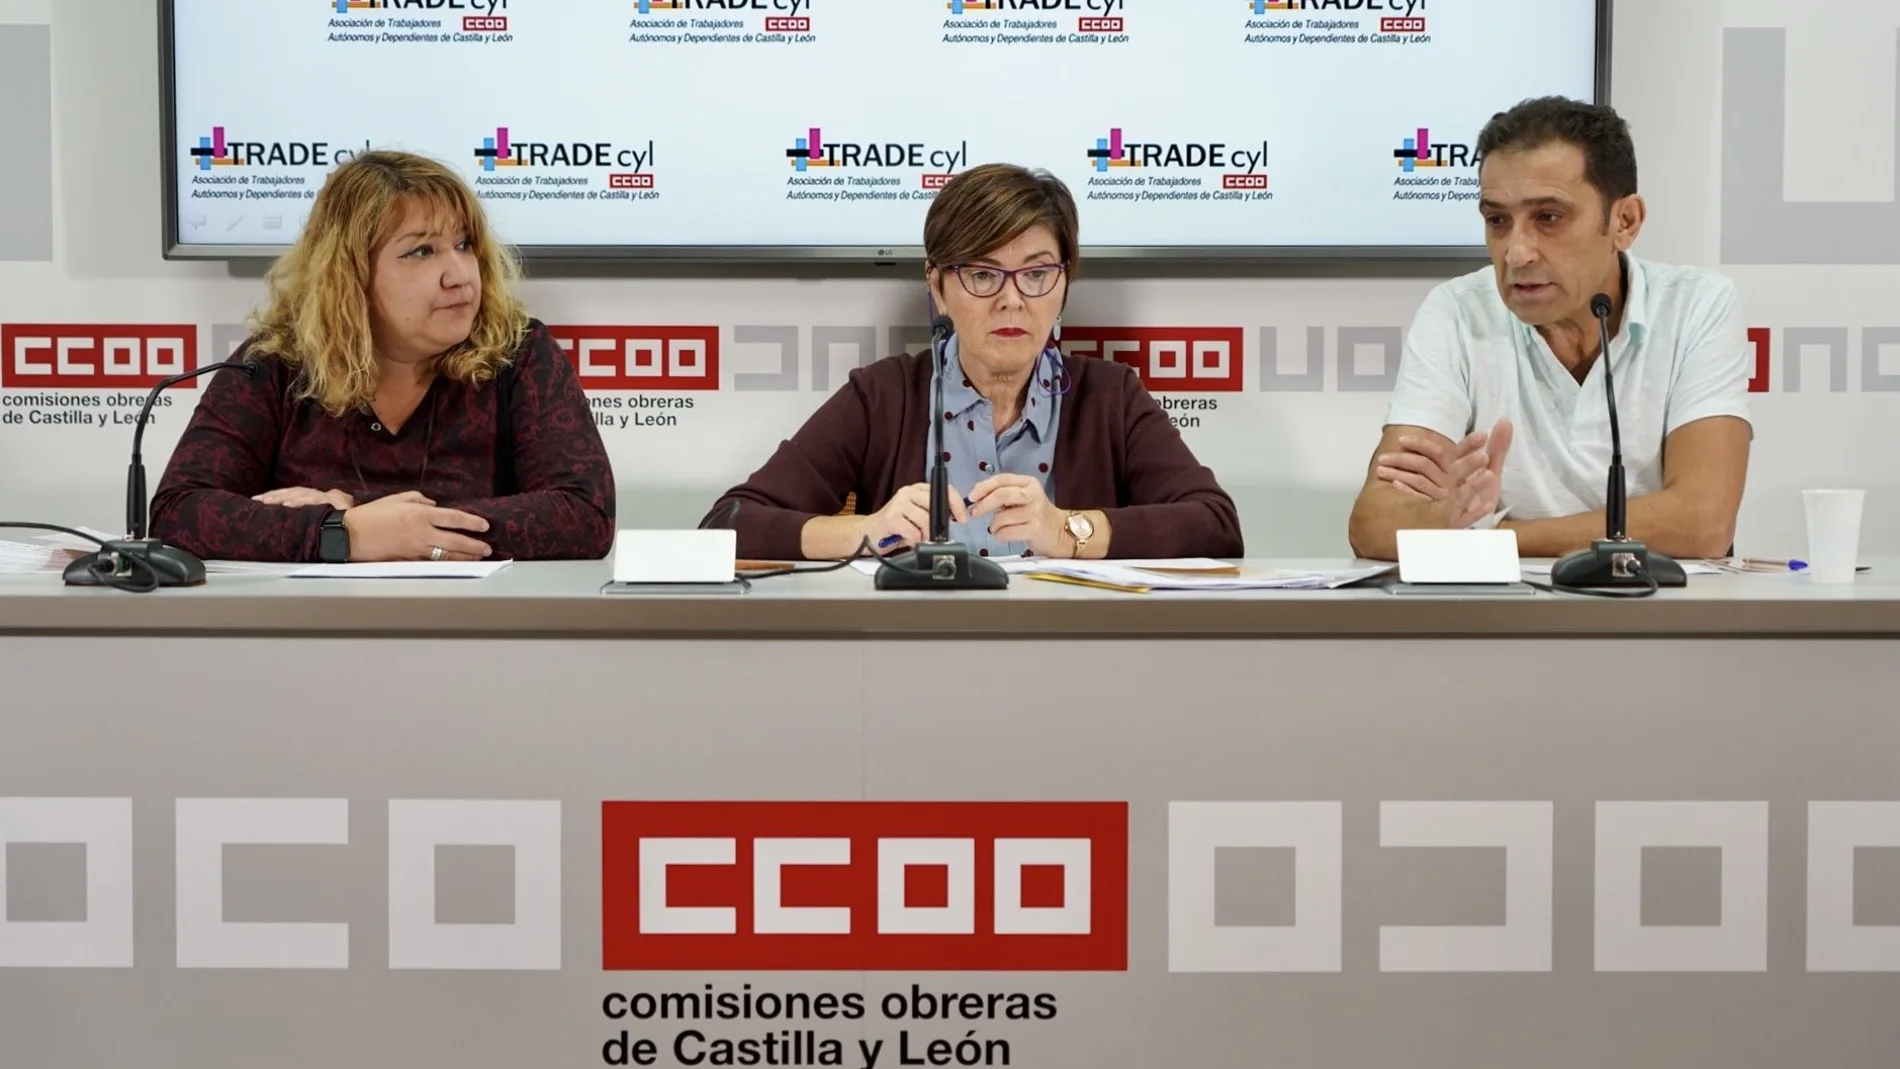 La asociación de autónomos TradeCyL celebra su congreso autonómico. De izquierda a derecha, María Vallejo, Rosa Eva Martínez, y el secretario regional de CCOO, Vicente Andrés